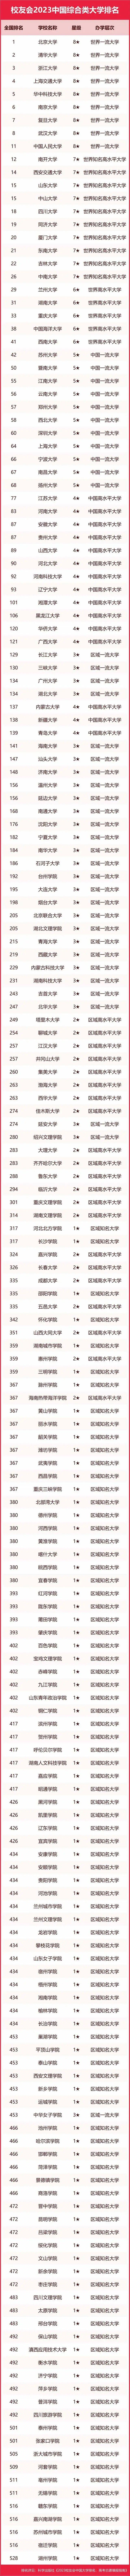 最新！2023校友会中国大学排名完整榜单